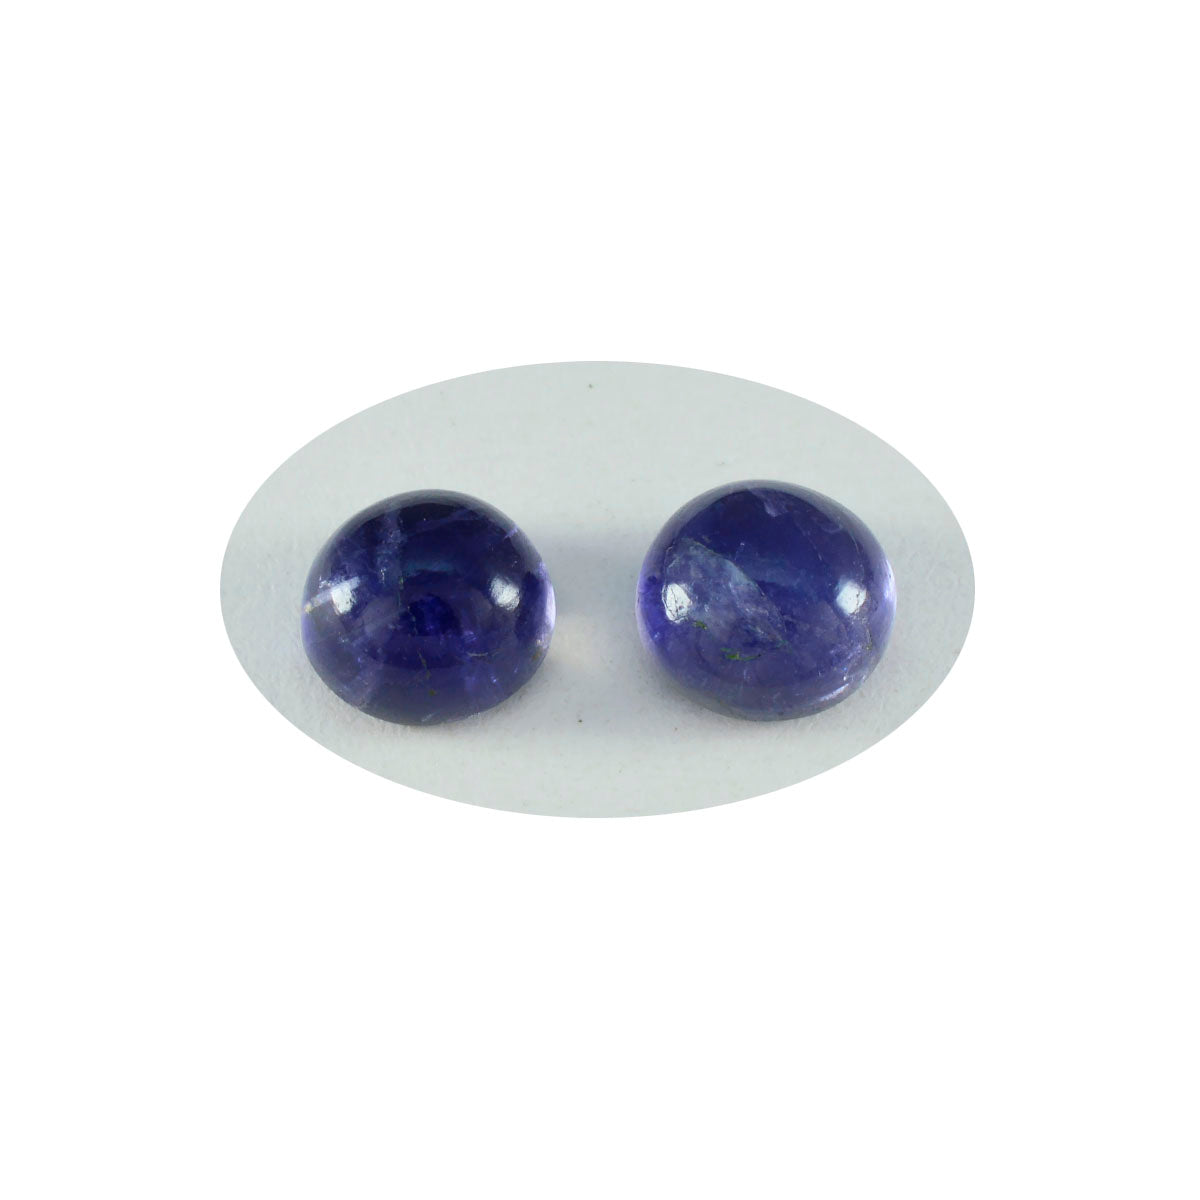 Riyogems 1 pieza cabujón de iolita azul 11x11 mm forma redonda gema de buena calidad